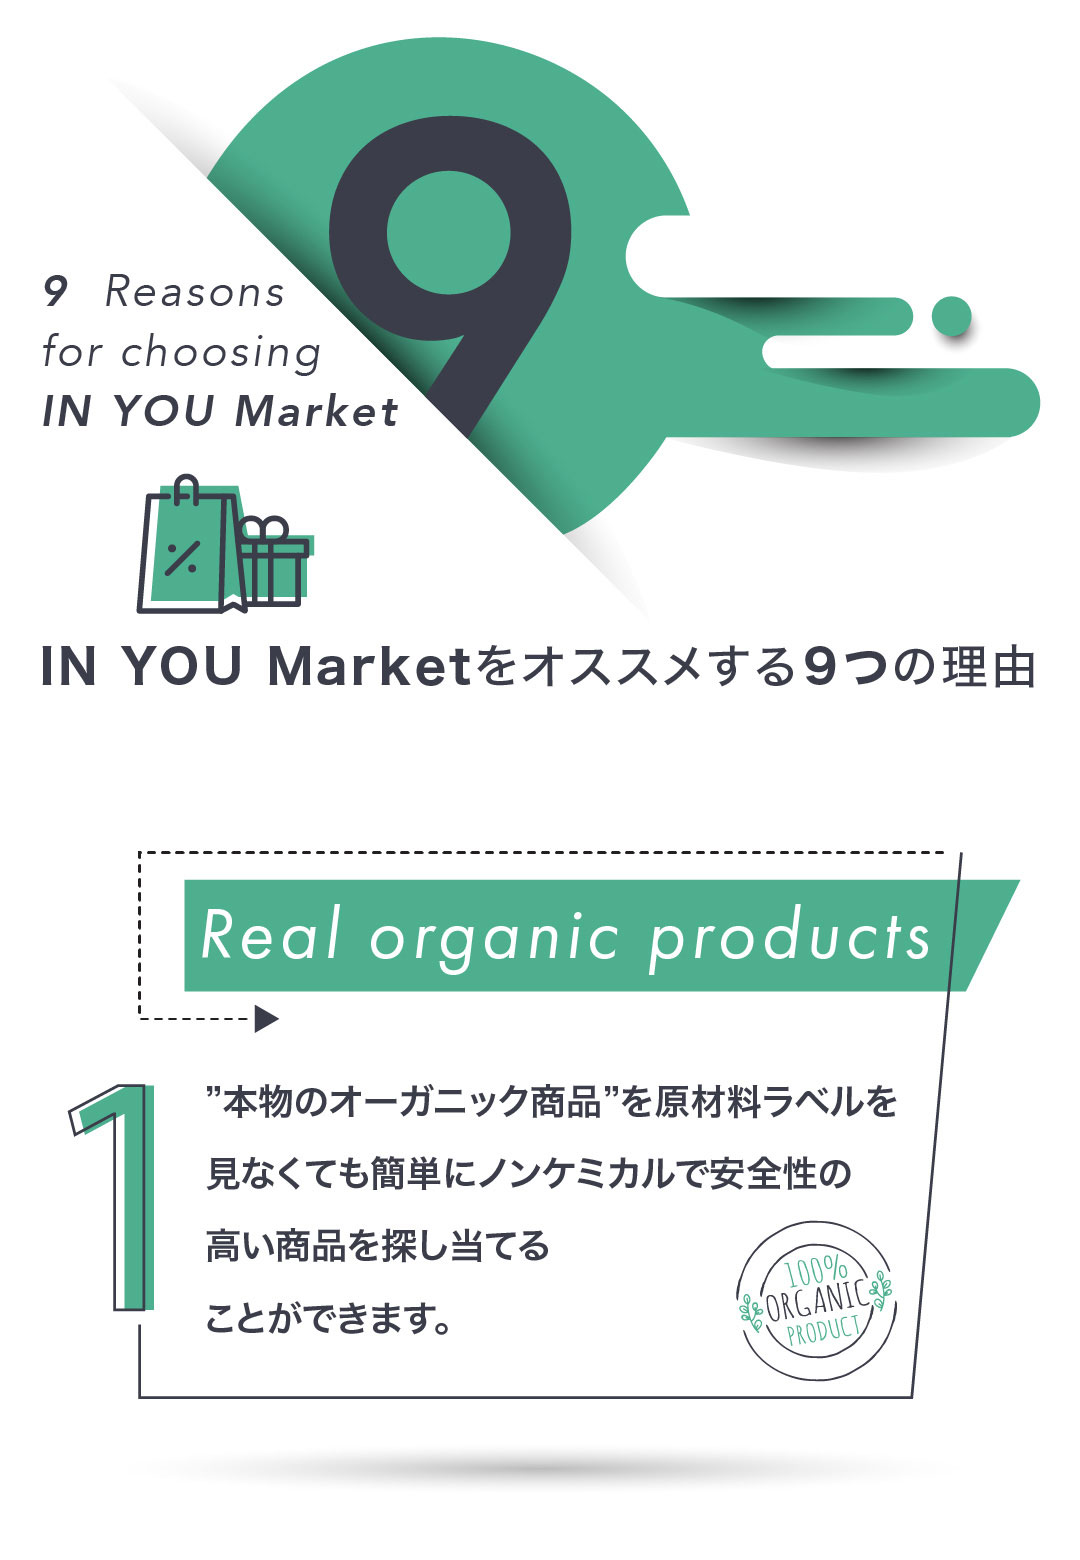 IN YOU Marketをオススメする９つの理由 (1) ”本物のオーガニック商品”を原材料ラベルを見なくても簡単にノンケミカルで安全性の高い商品を探し当てることができます。